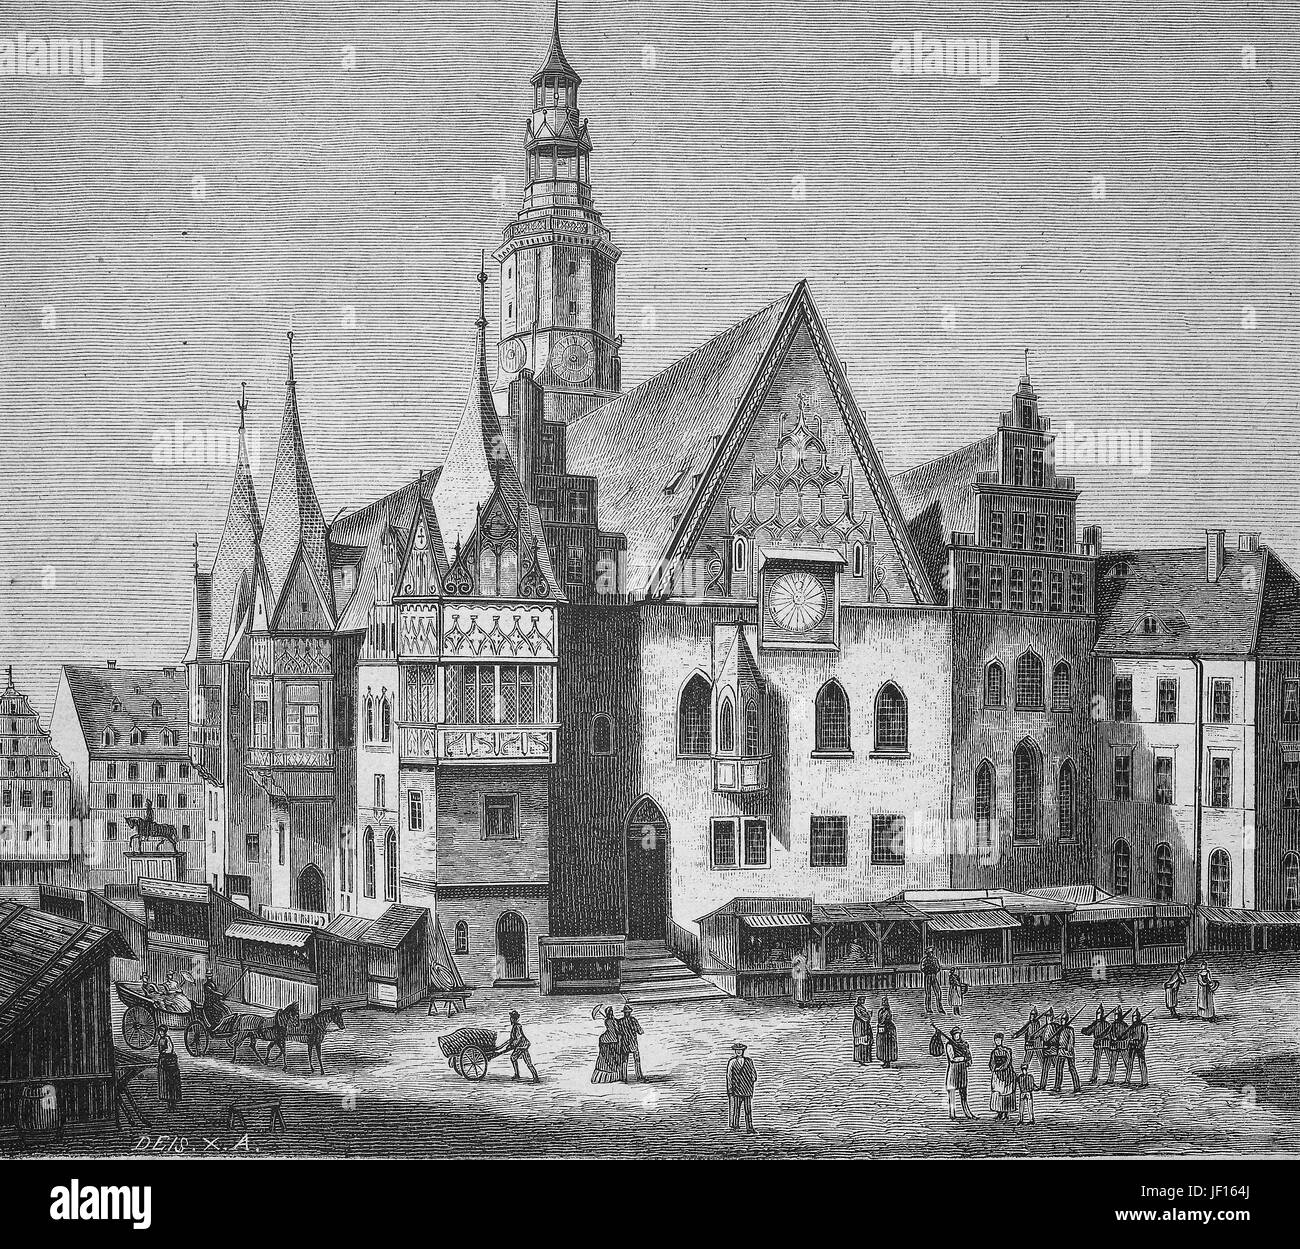 Ilustración histórica del ayuntamiento de Breslau, Wroclaw, antigua ciudad alemana, ahora Polonia, Silesia, mejor reproducción digital de una impresión original de 1888 Foto de stock